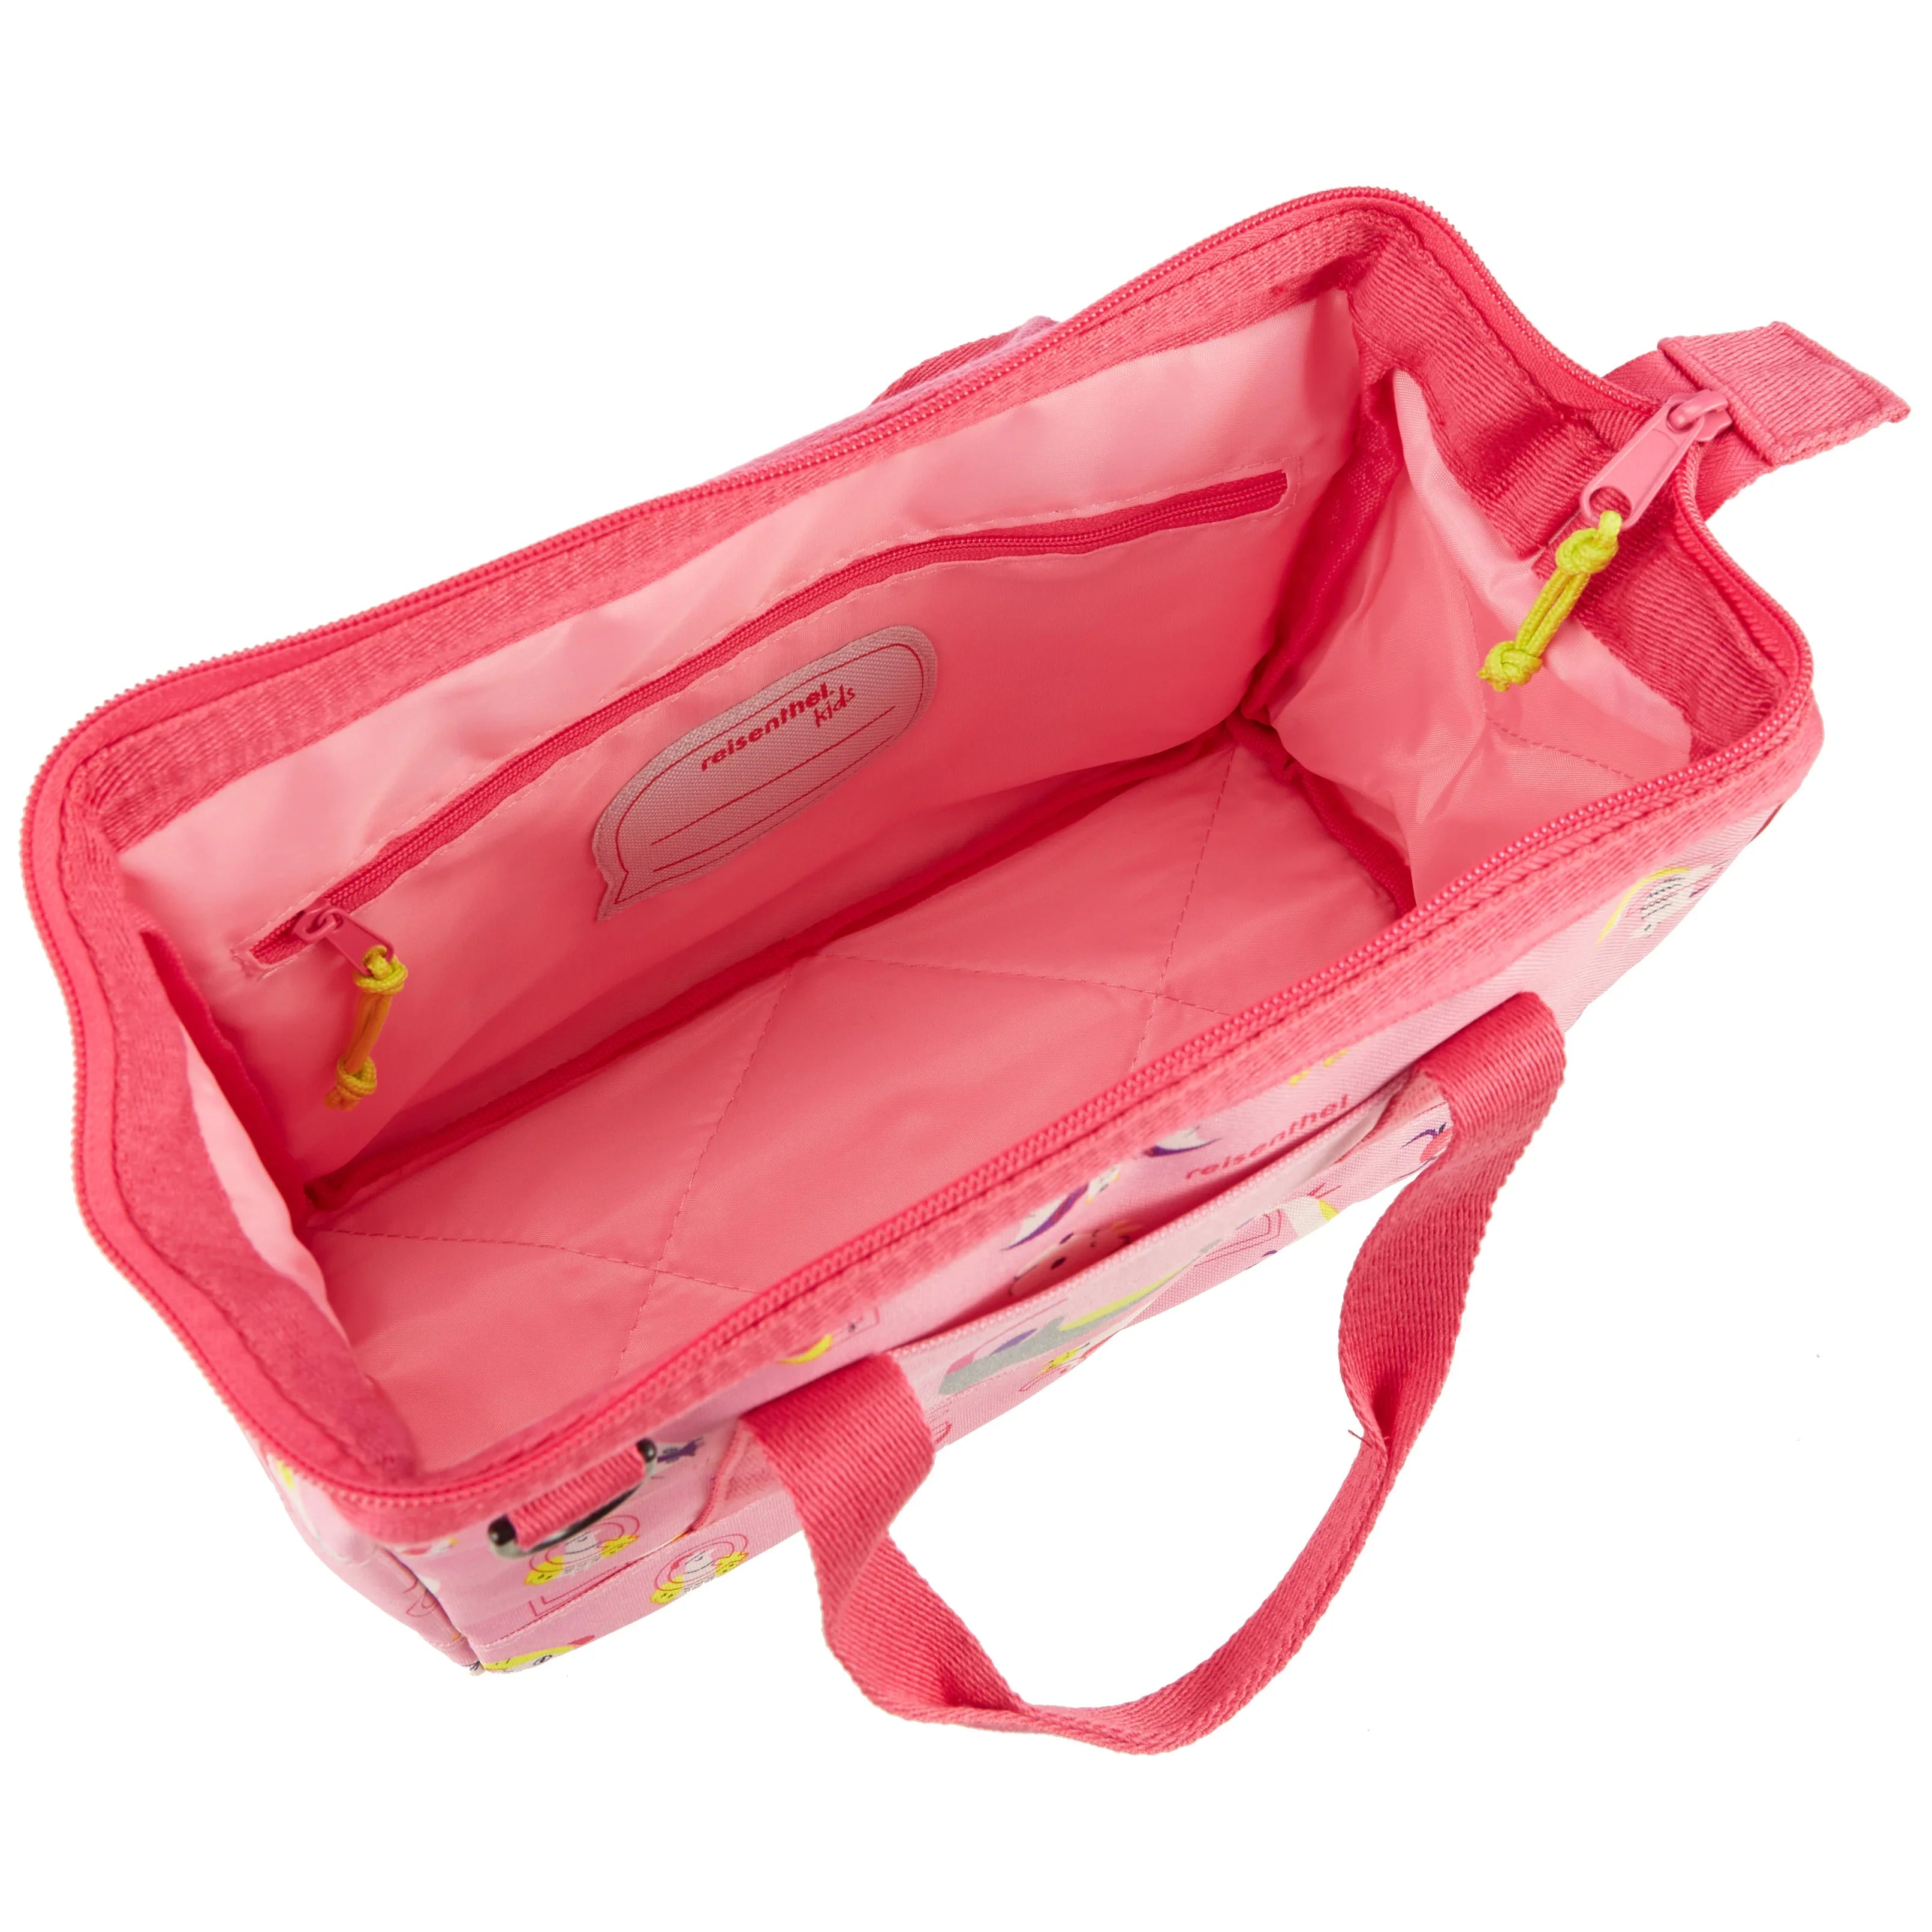 Reisenthel Kids Allrounder travel bag XS 27 cm - panda dots pink